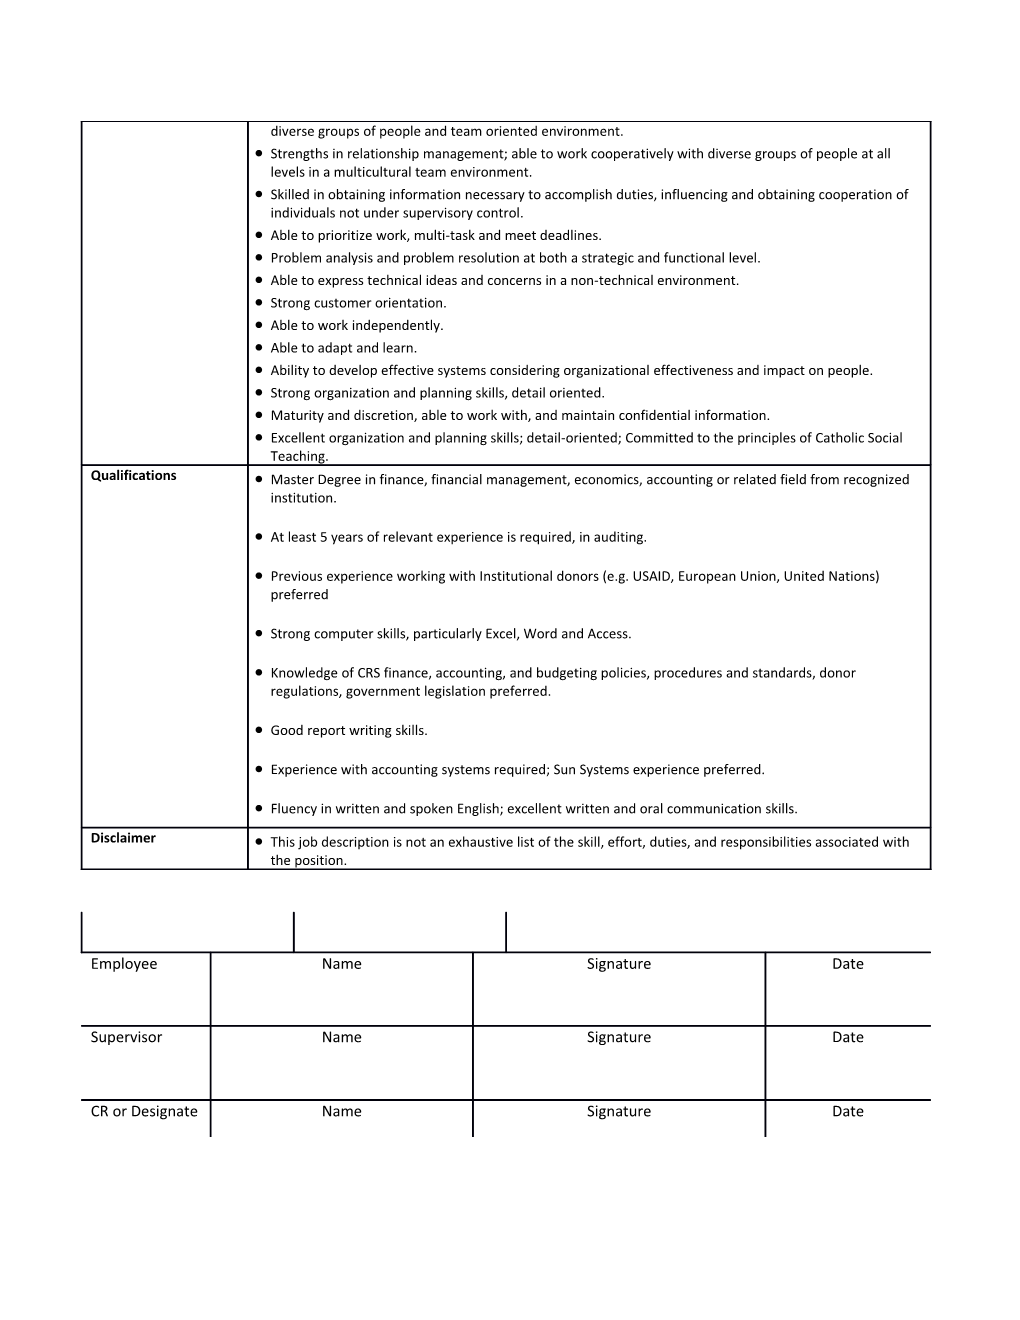 Senior Compliance Officer Job Description Template (Jdt)